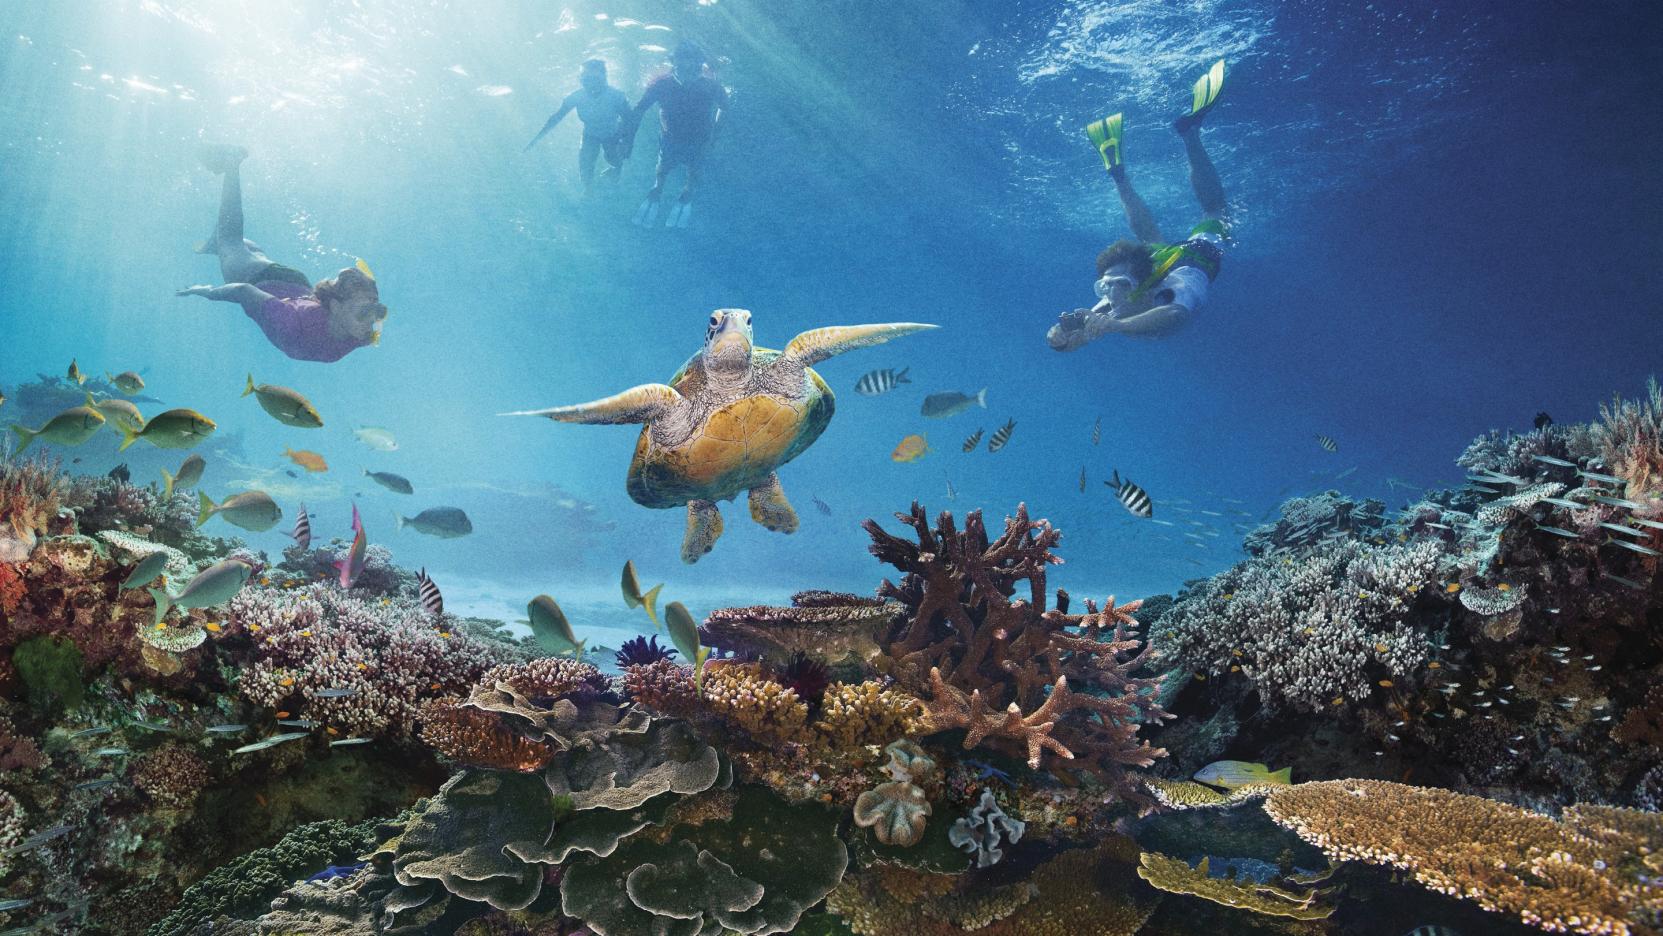 Great Barrier Reef wallpaper, Earth, HQ Great Barrier Reef pictureK Wallpaper 2019